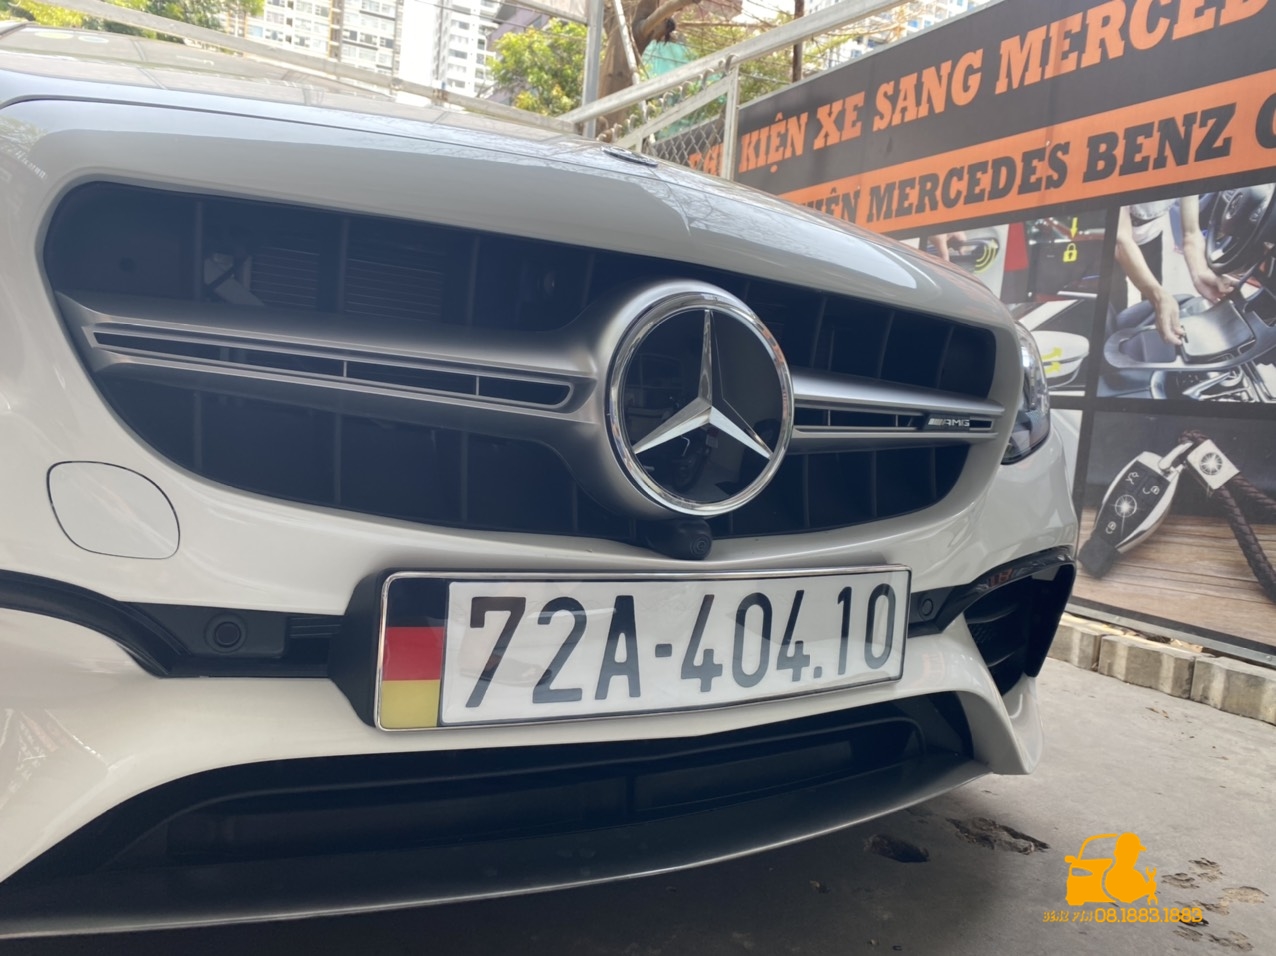 Phụ kiện xe sang Mercedes Benz – nhà cung cấp phụ kiện uy tín, chính hãng